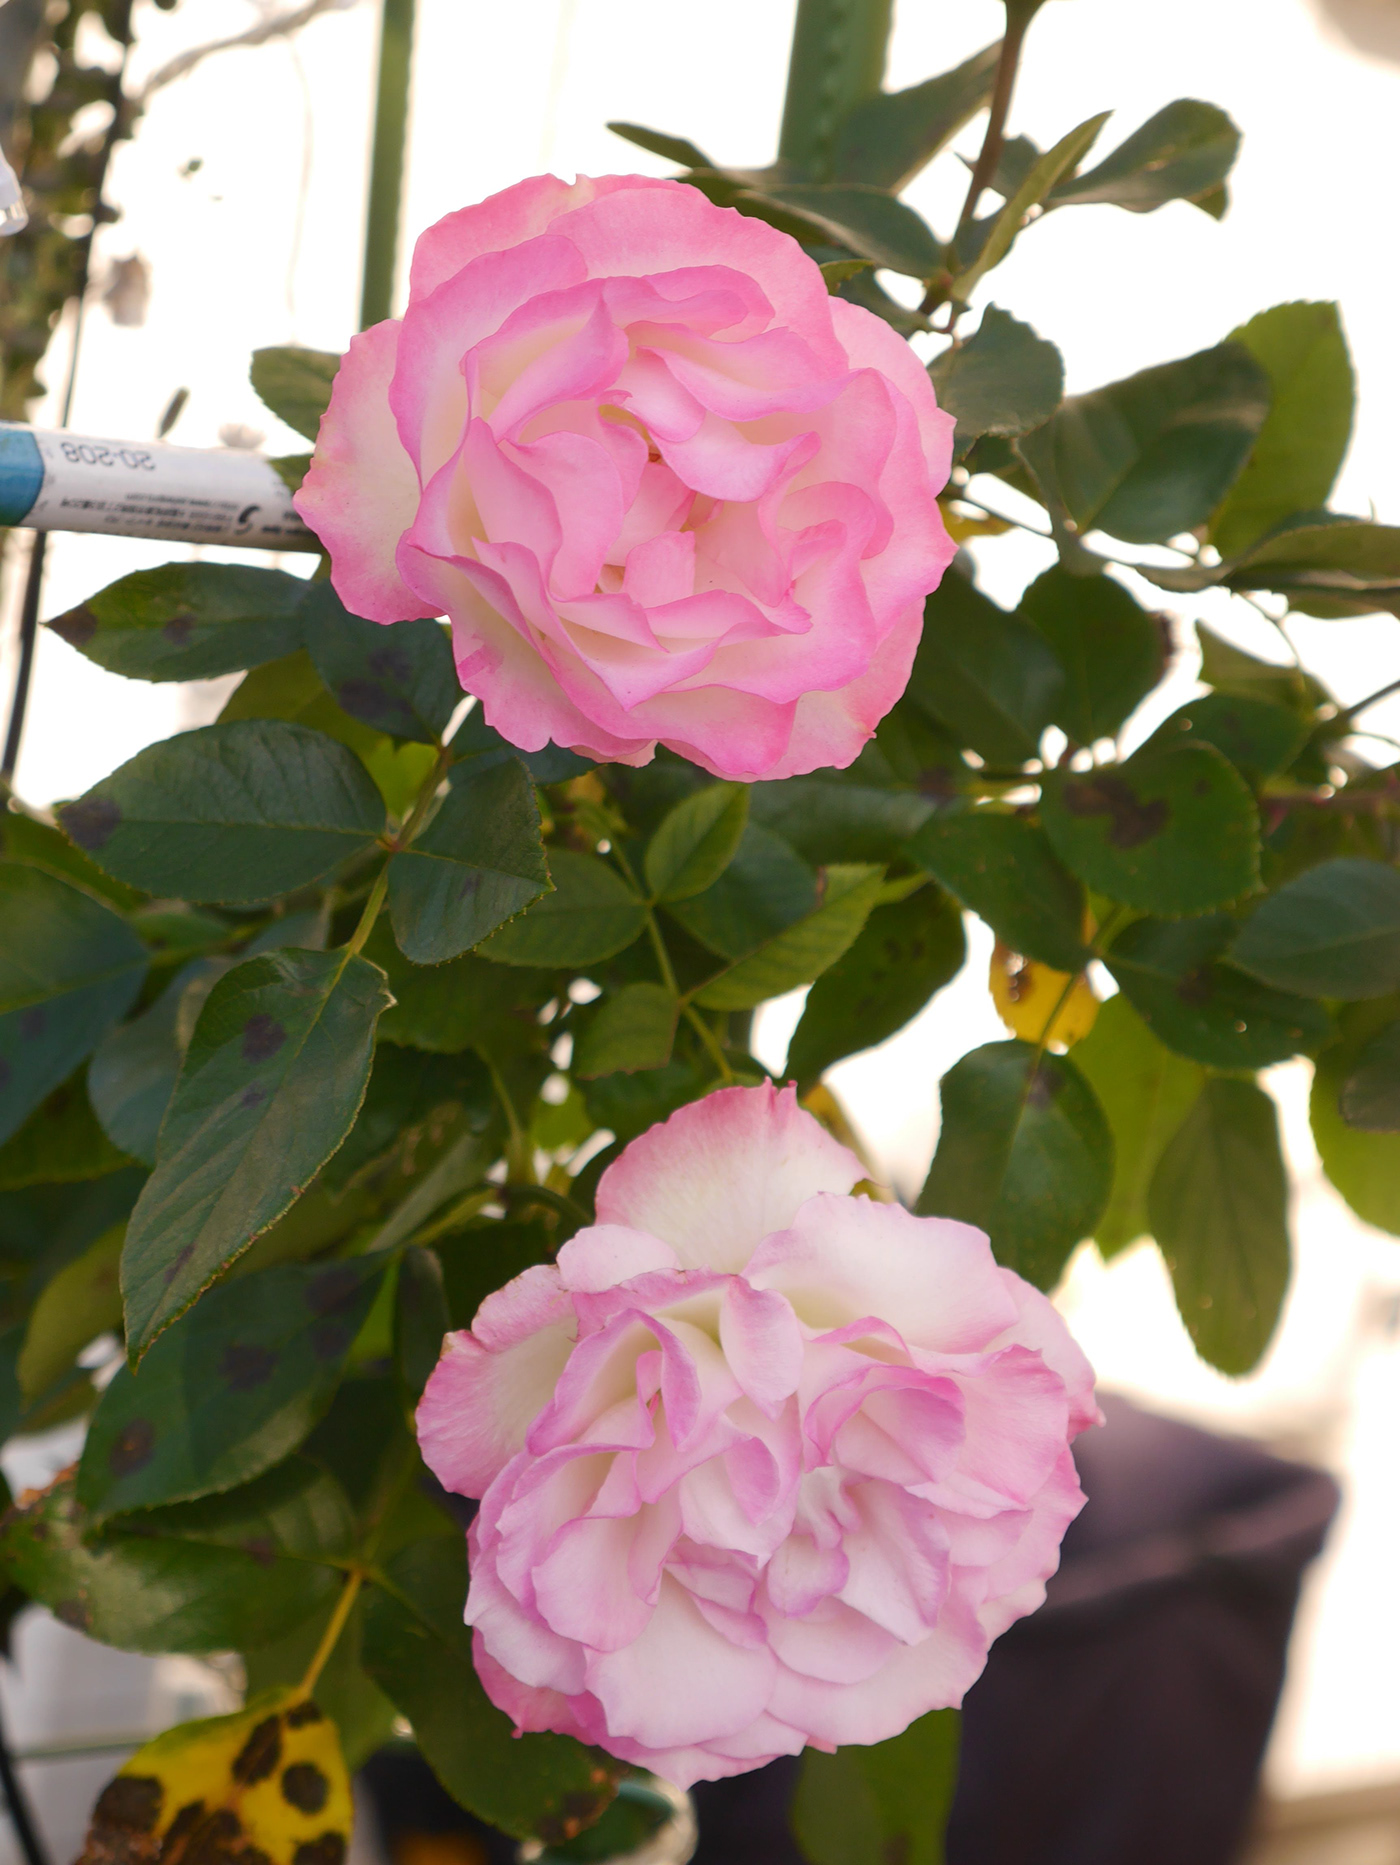 flower rose